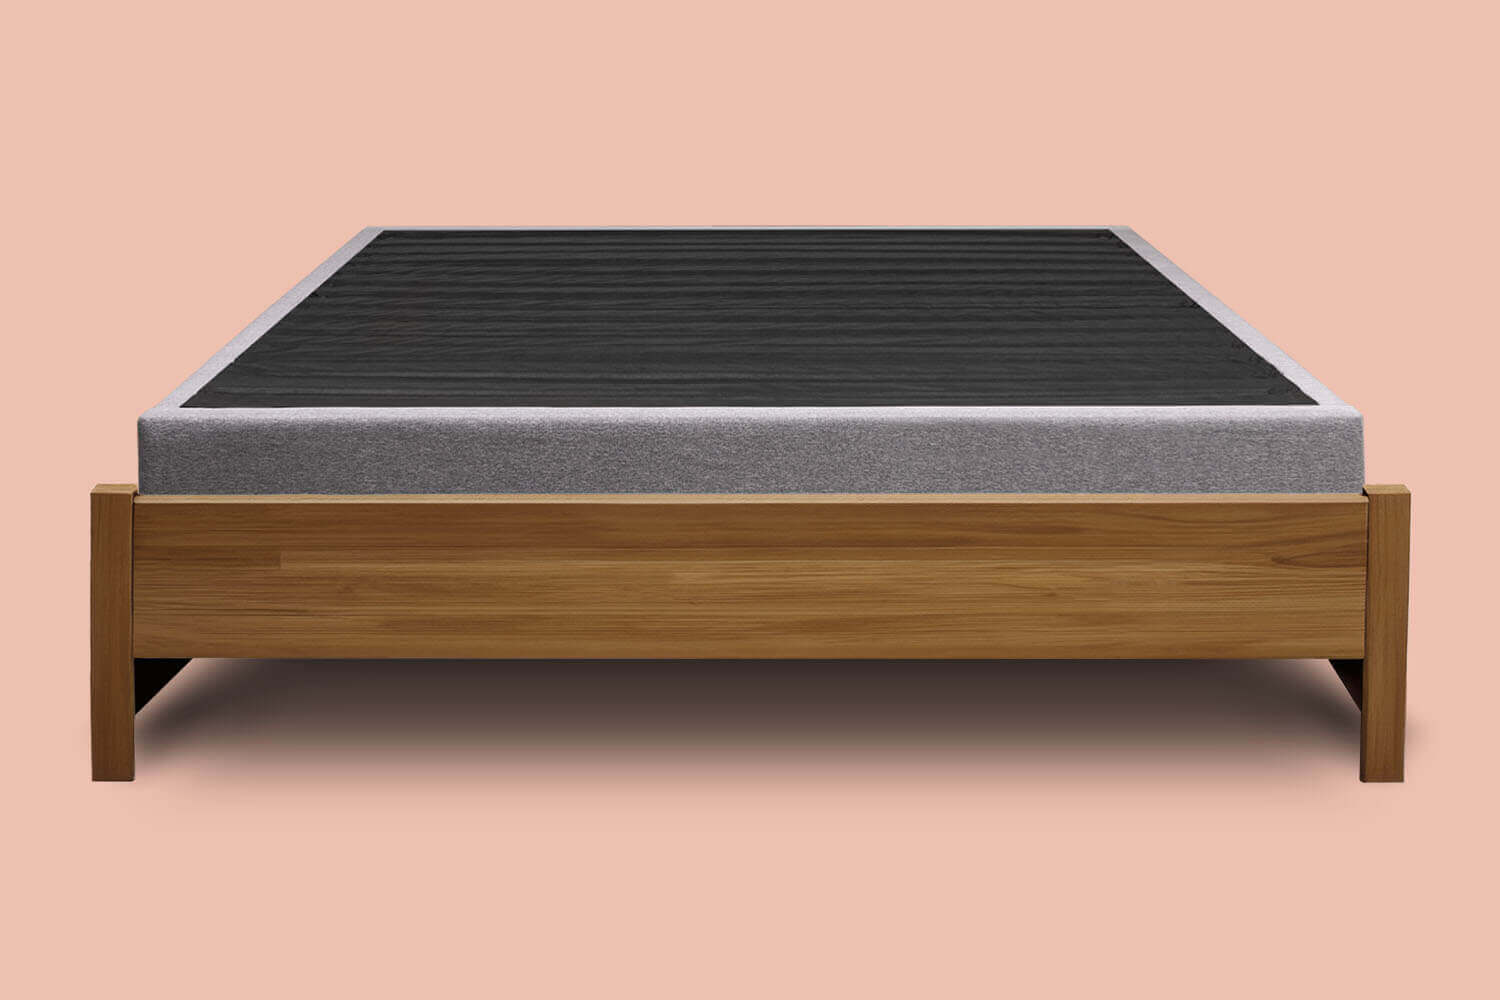 Platform Bed foundation in a decorative wood bed frame